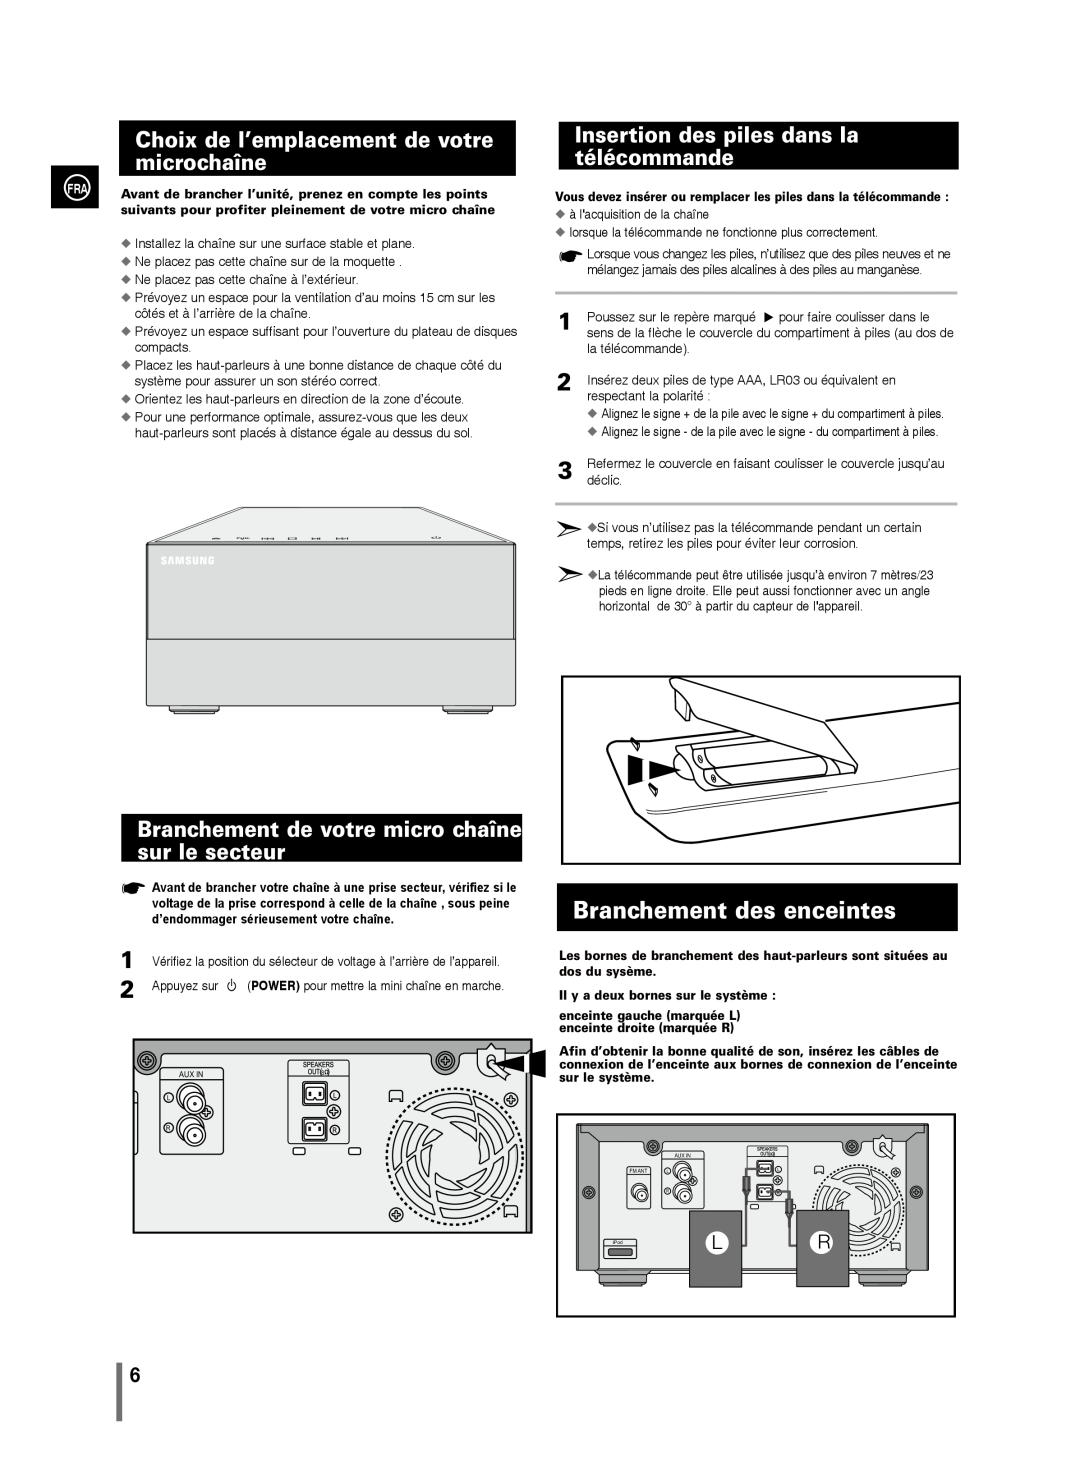 Samsung MM-C430/XEF manual Branchement des enceintes, Choix de l’emplacement de votre microchaîne 